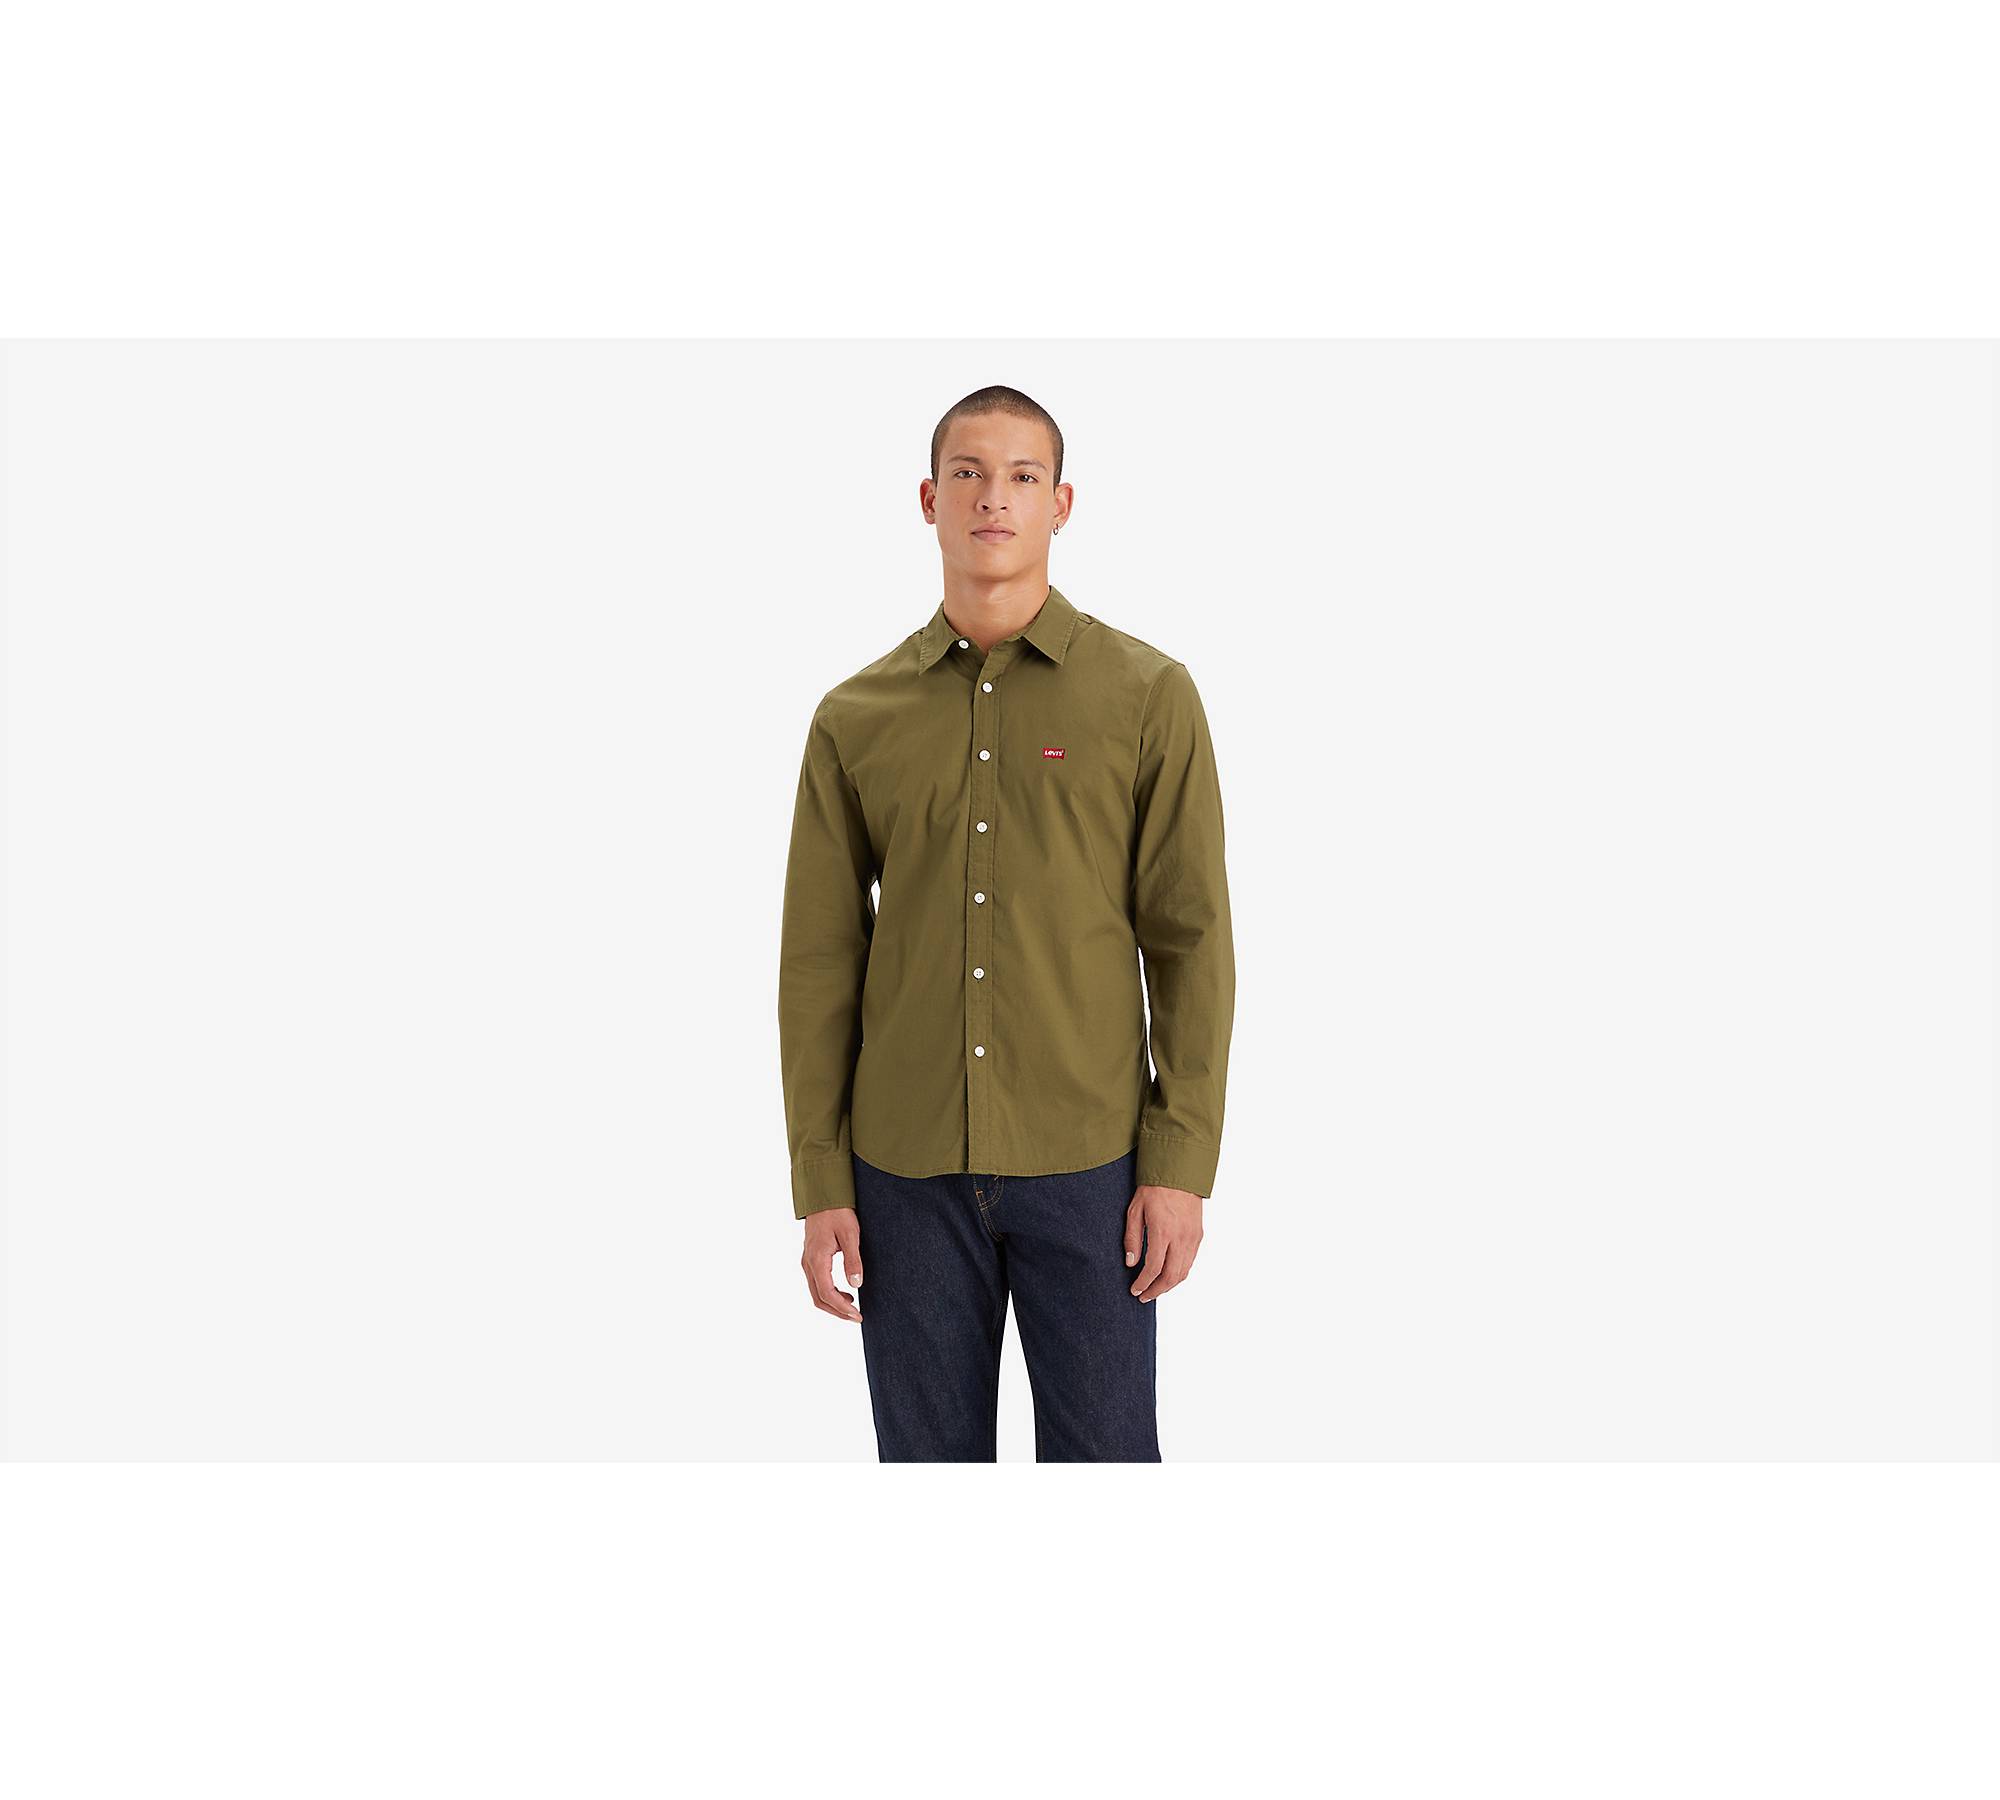 Gaiam Commuter Shirt - Zip Neck, Long Sleeve - Save 72%